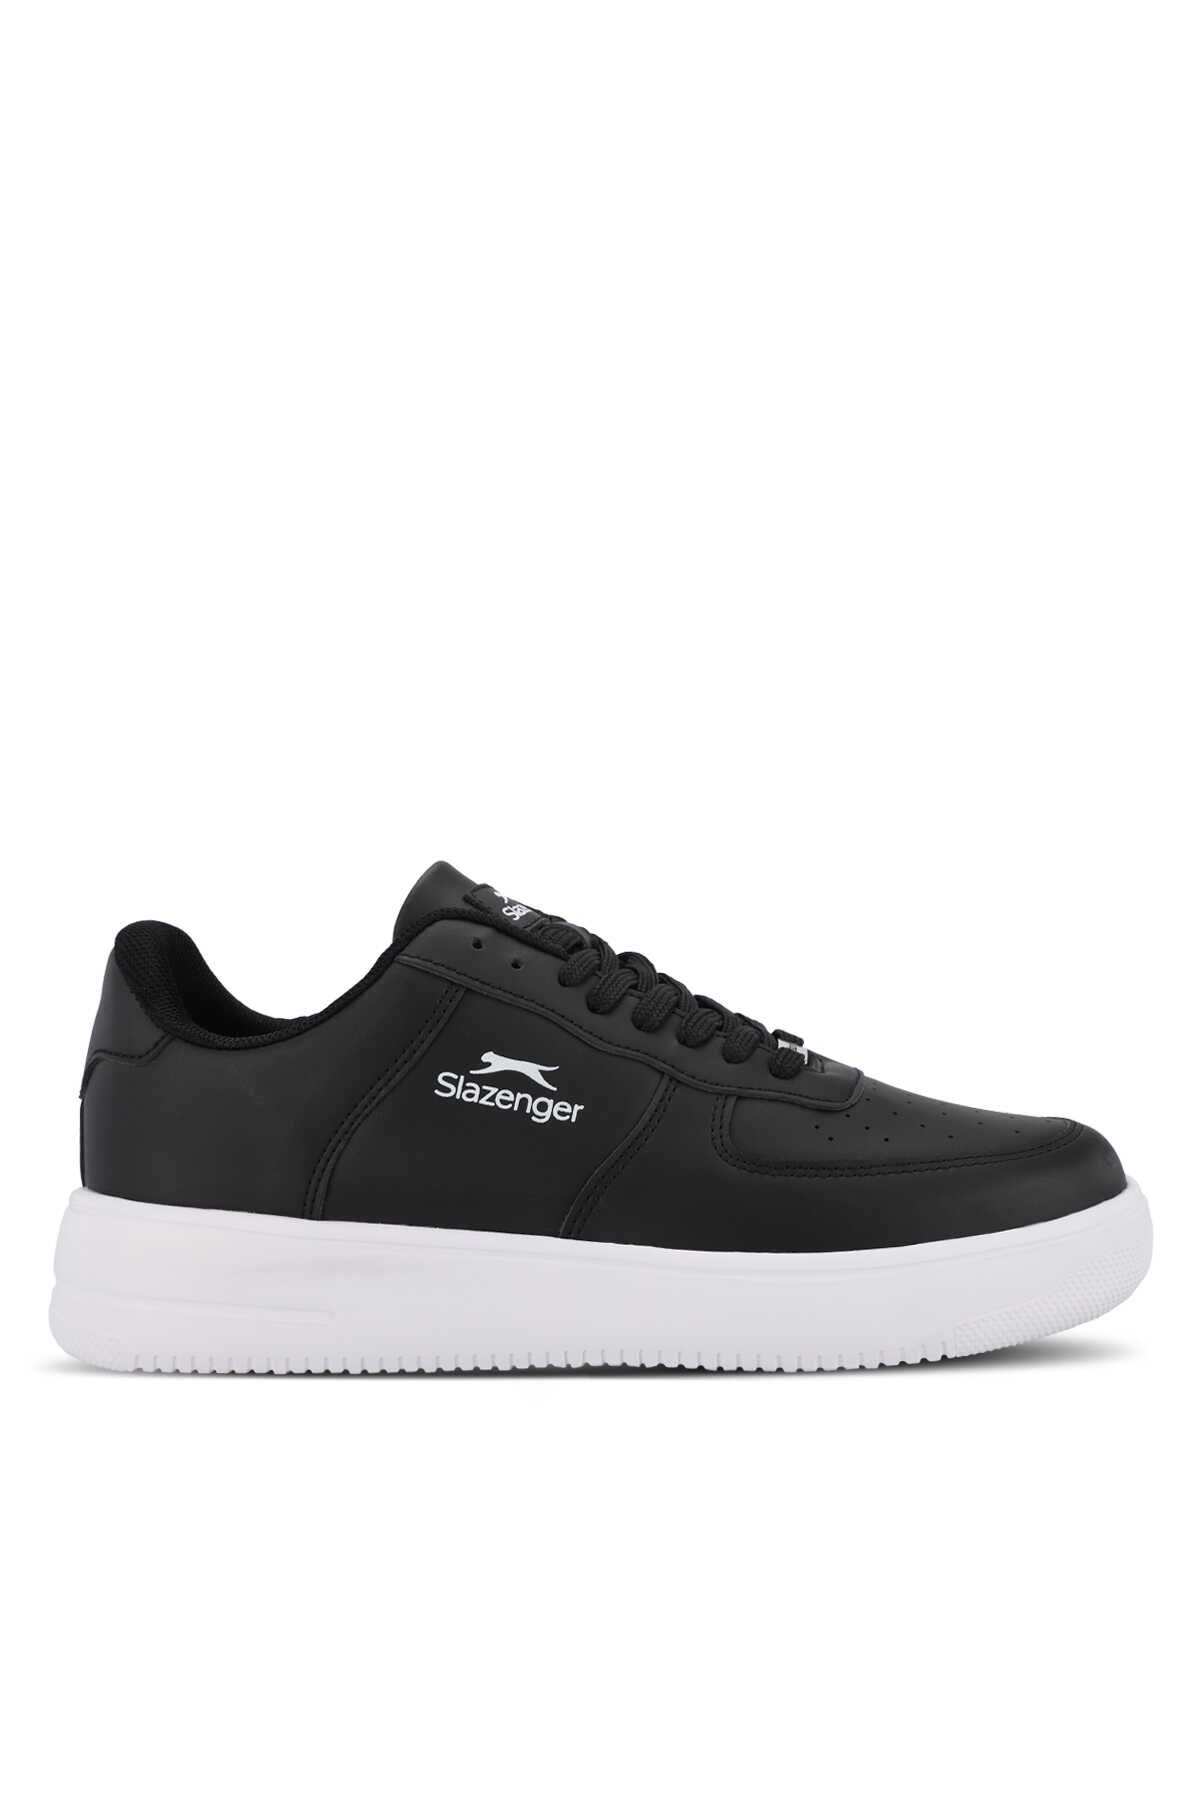 Slazenger - Slazenger PASCHAL I Erkek Sneaker Ayakkabı Siyah / Beyaz